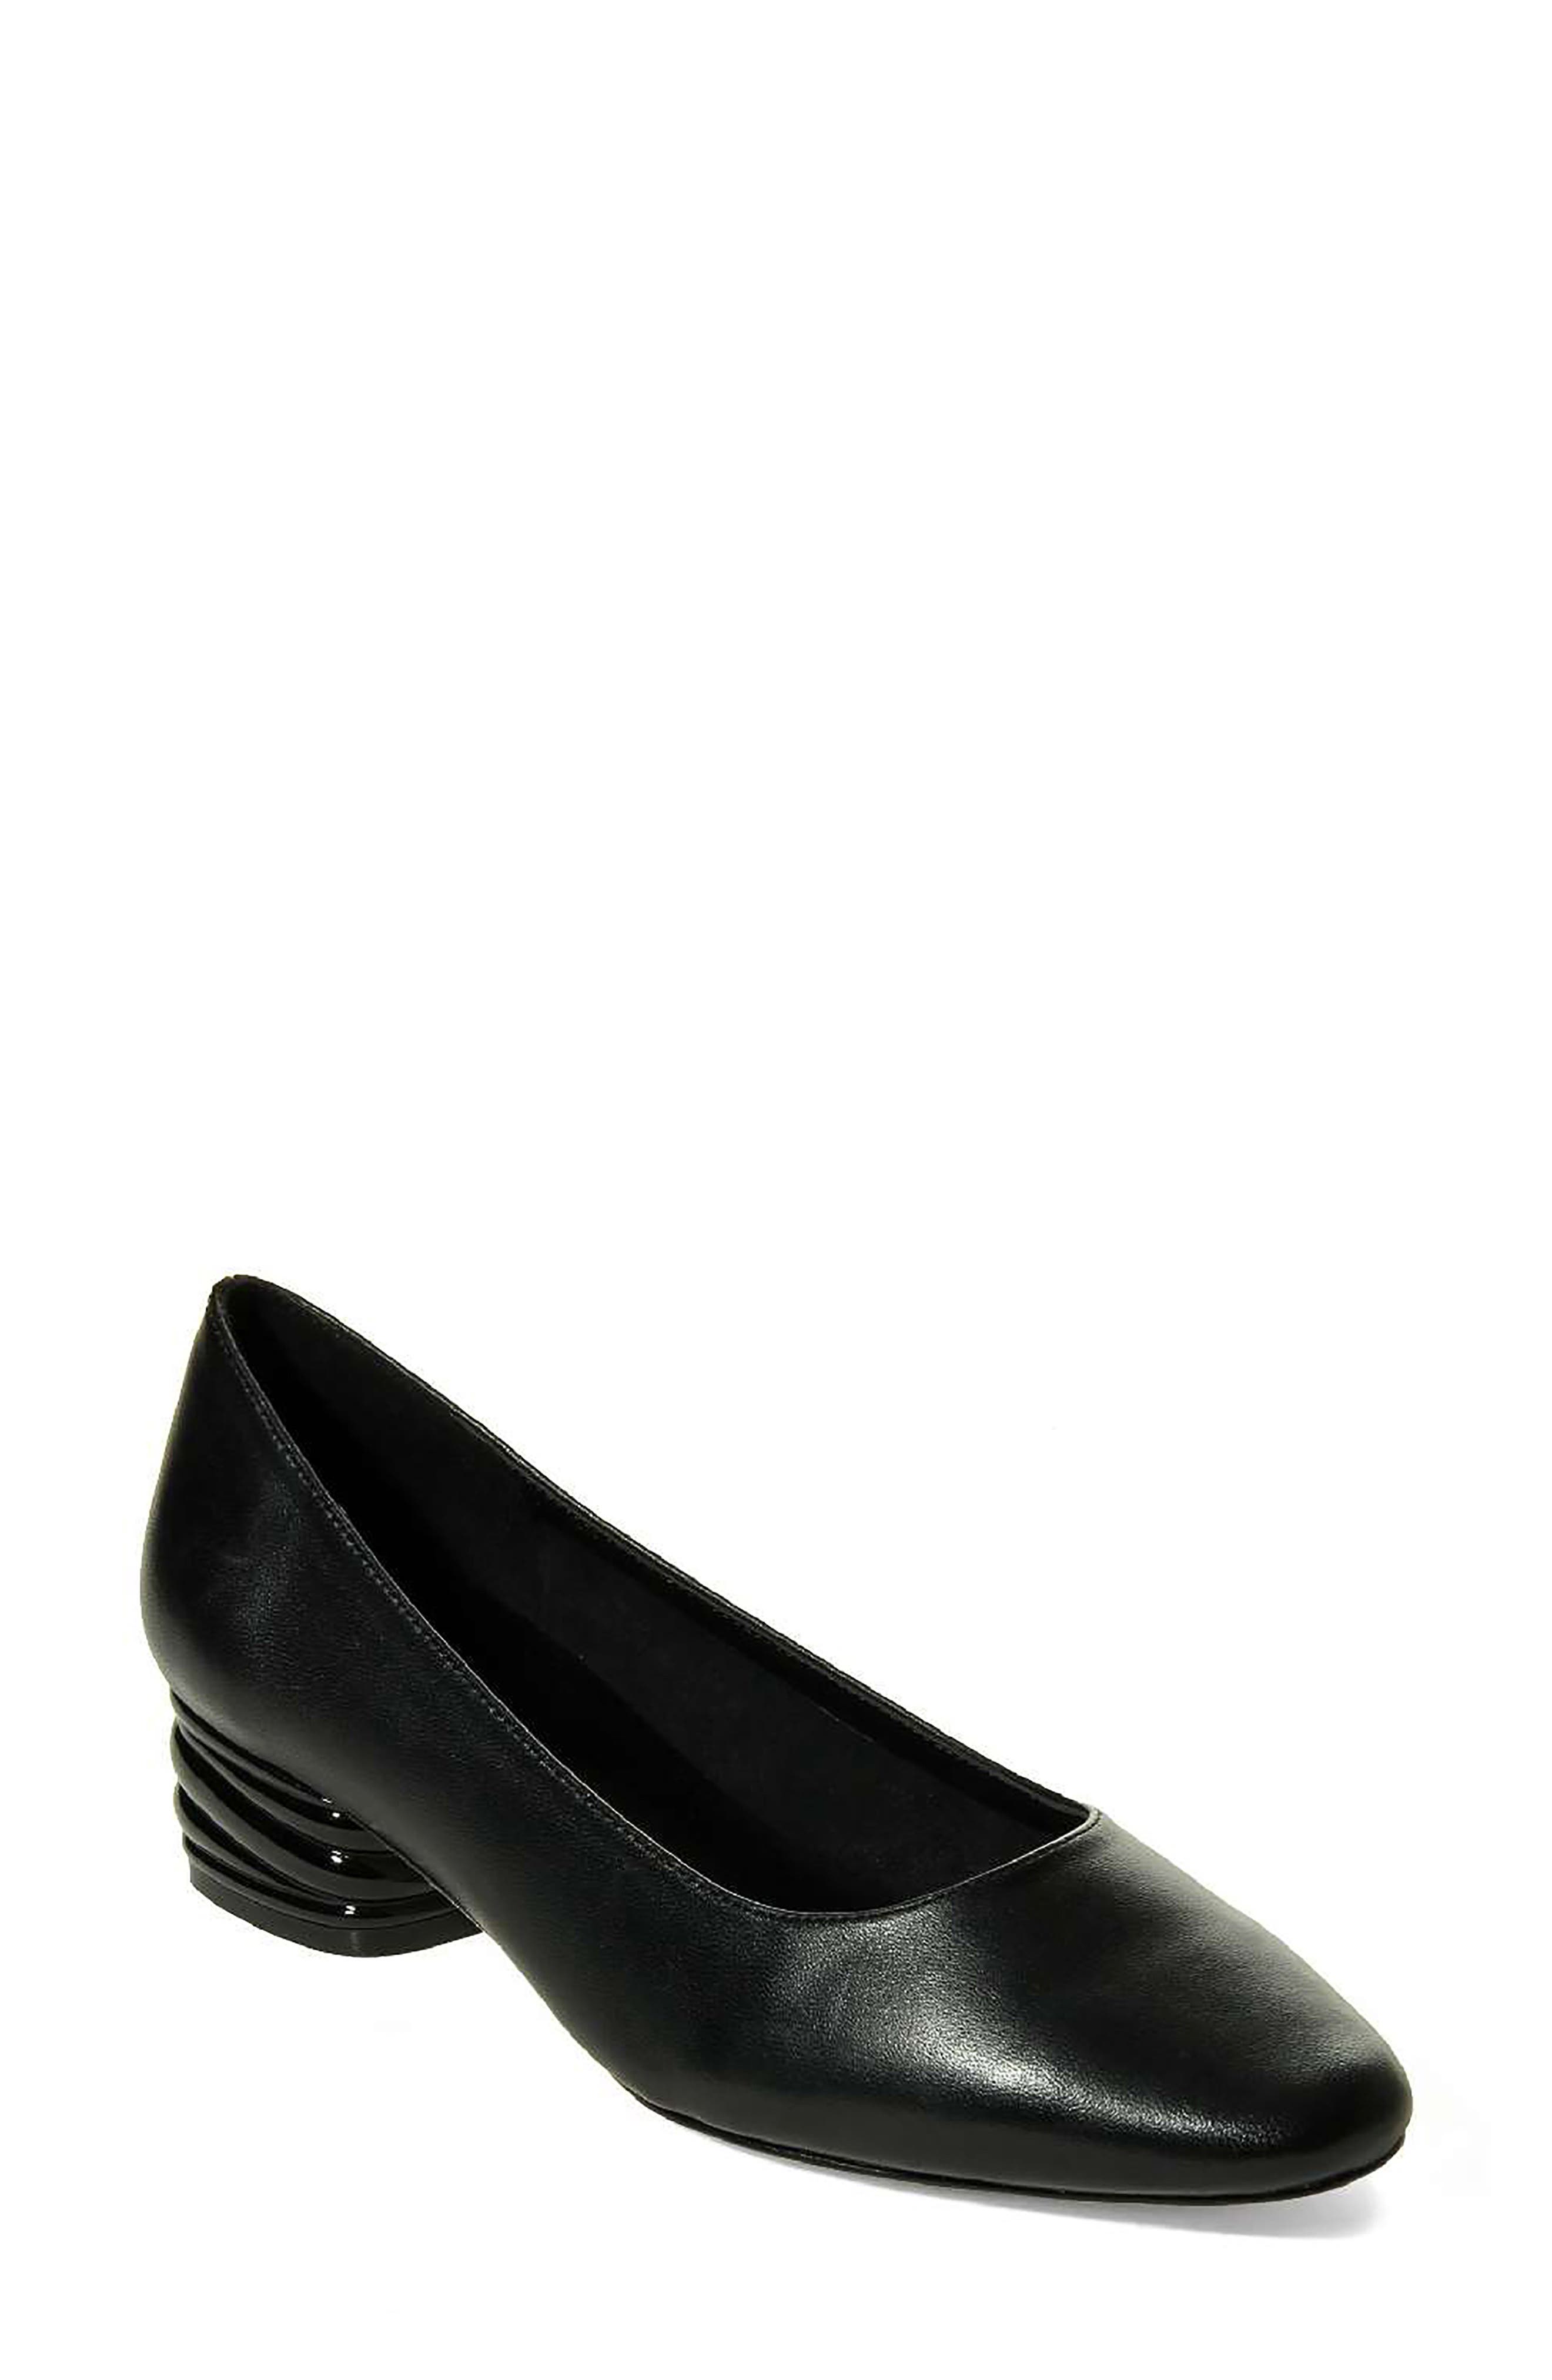 nordstrom black heels